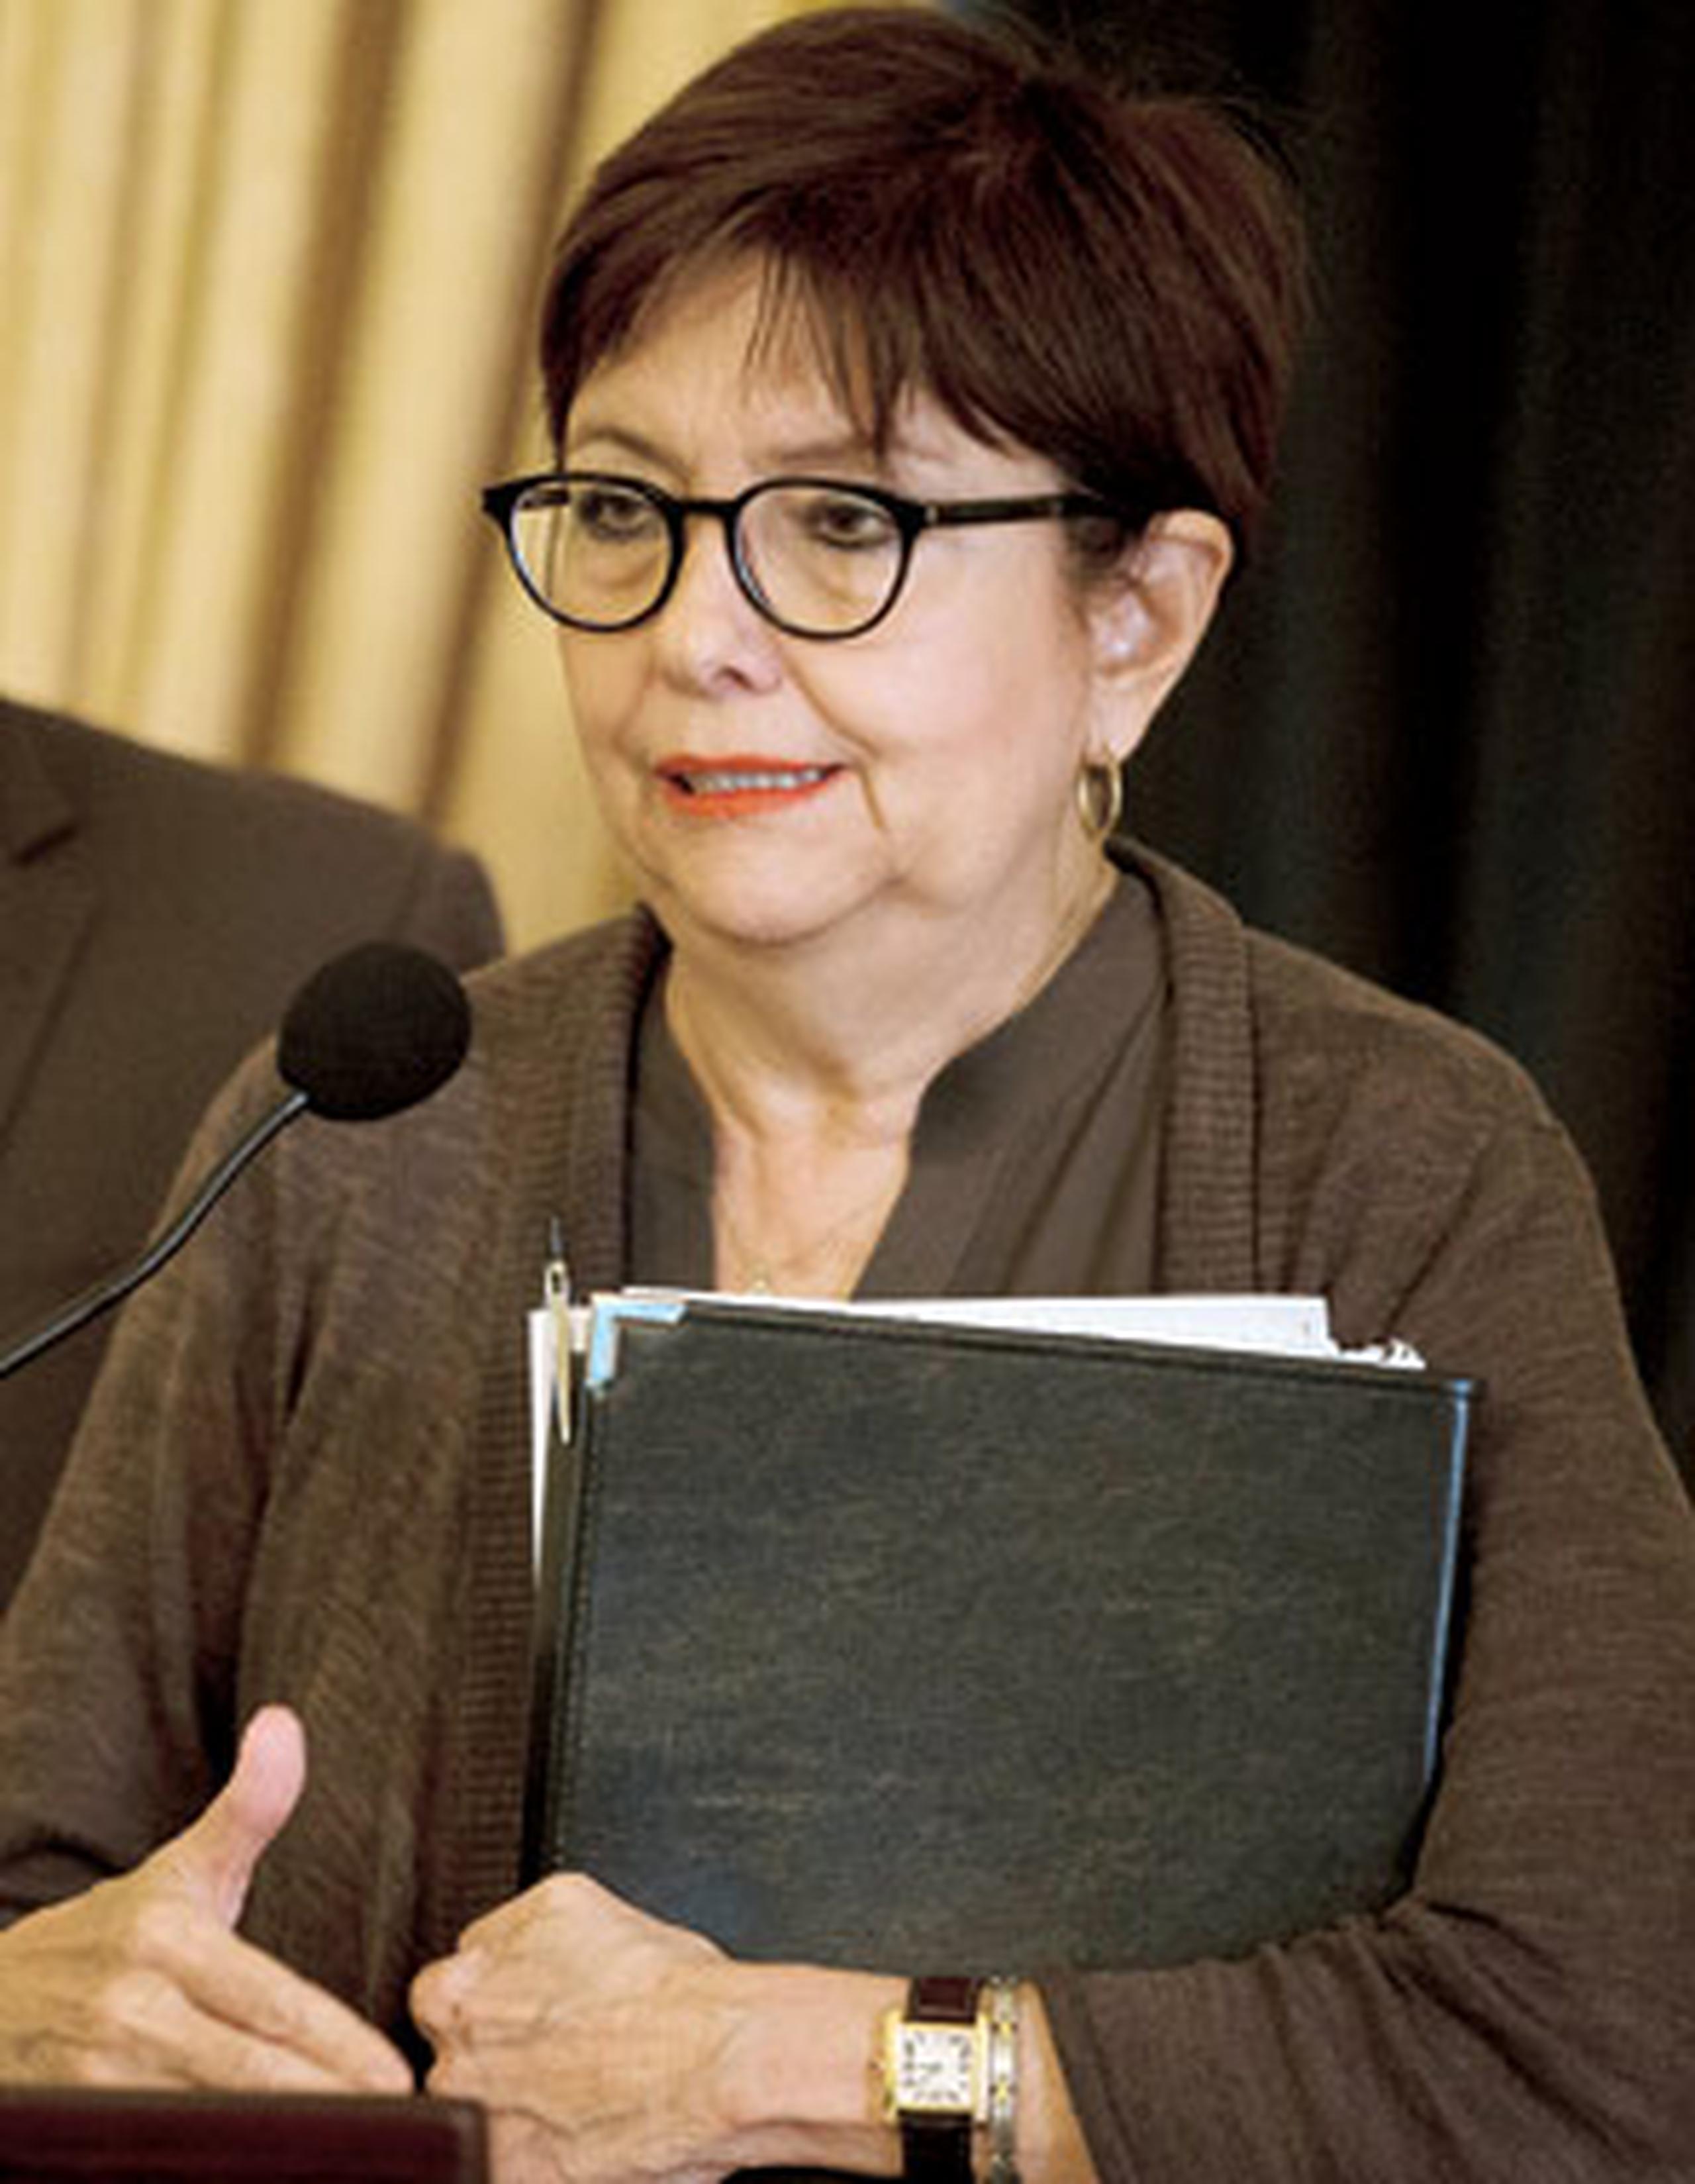 La jefa de la fiscalía federal, Rosa Emilia Rodríguez, propuso múltiples sugerencias incluidas en los cambios en las Reglas de Procedimiento Criminal. (Archivo)